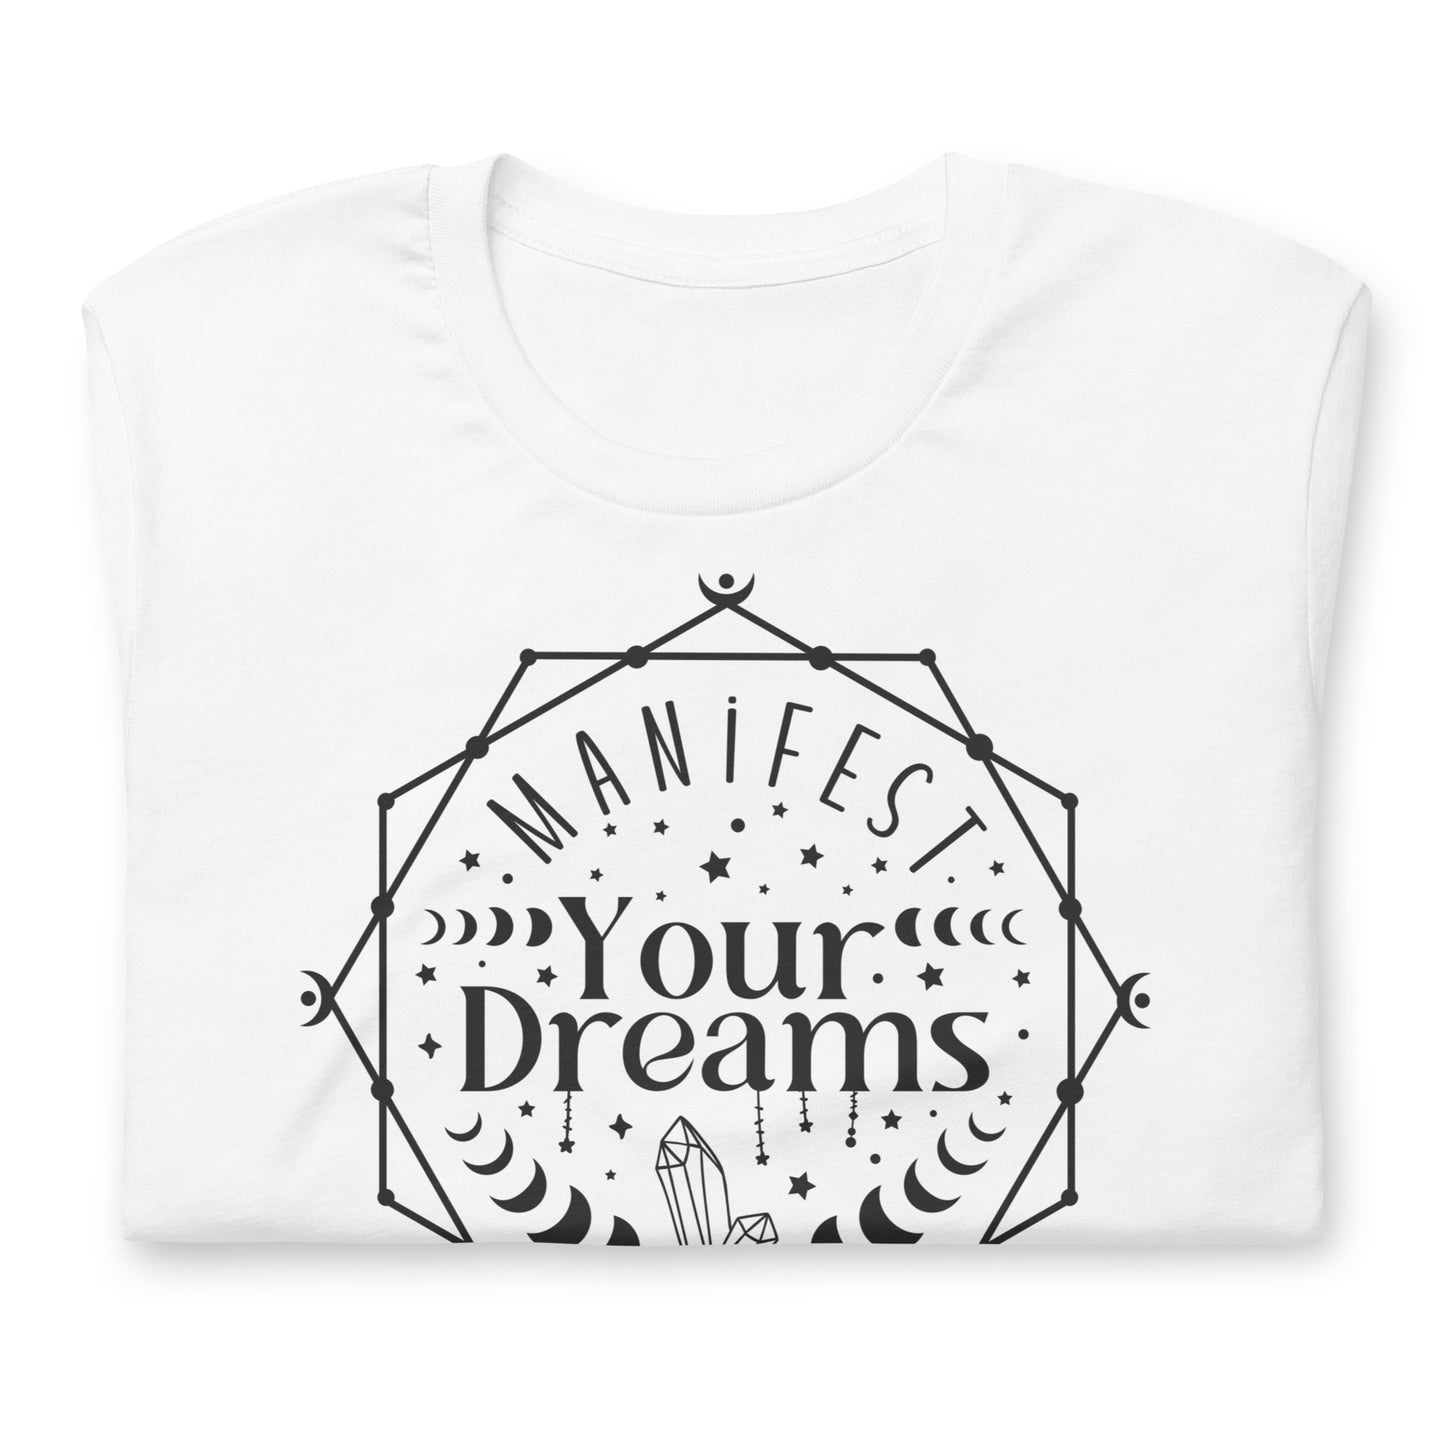 Manifest Your Dreams Quality Cotton Bella Canvas Adult T-Shirt